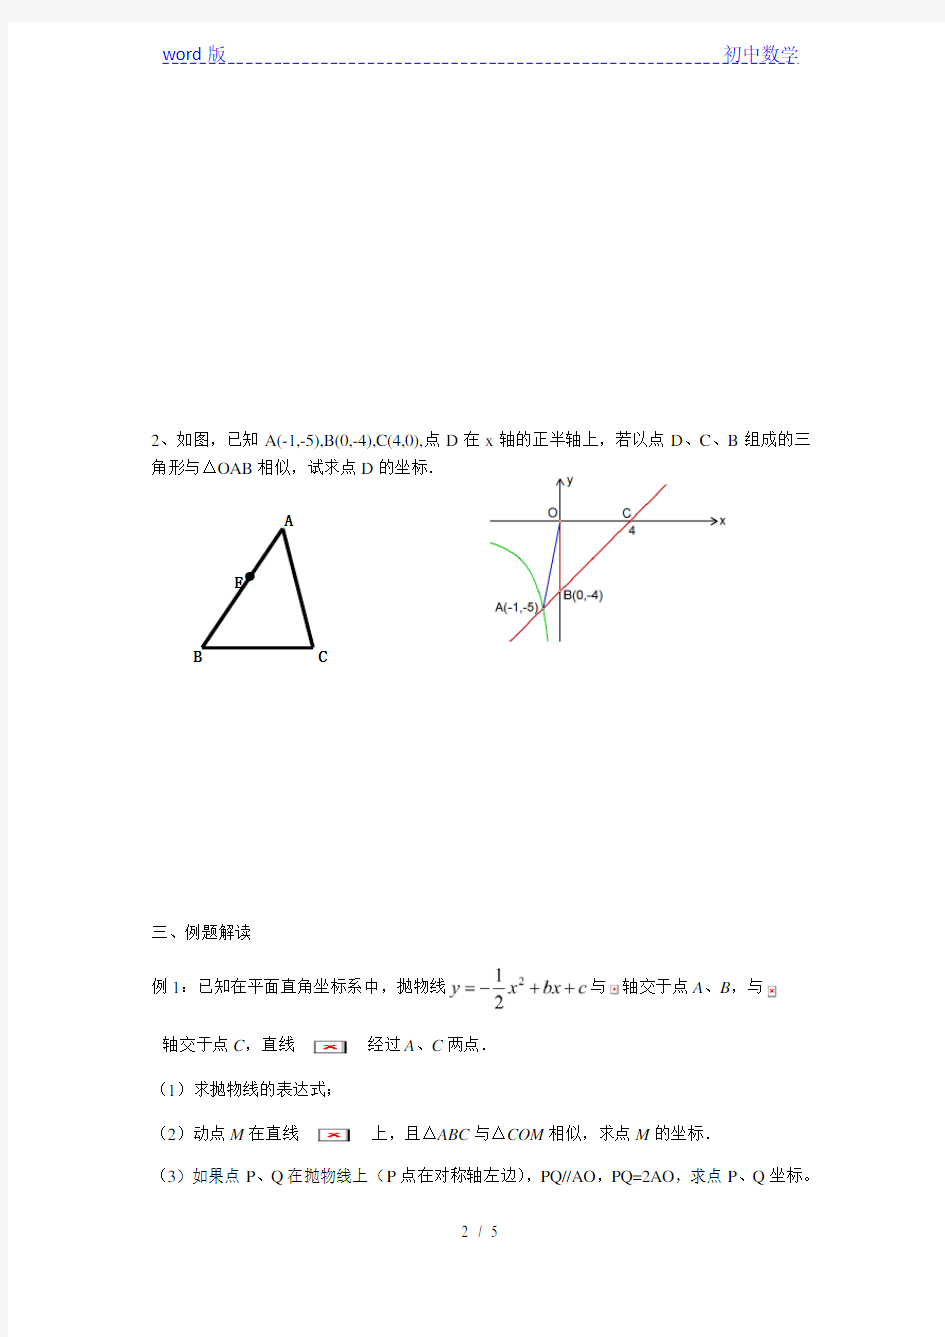 沪教版(上海)初中数学九年级第一学期 本章小结 二次函数与相似三角形 教案 